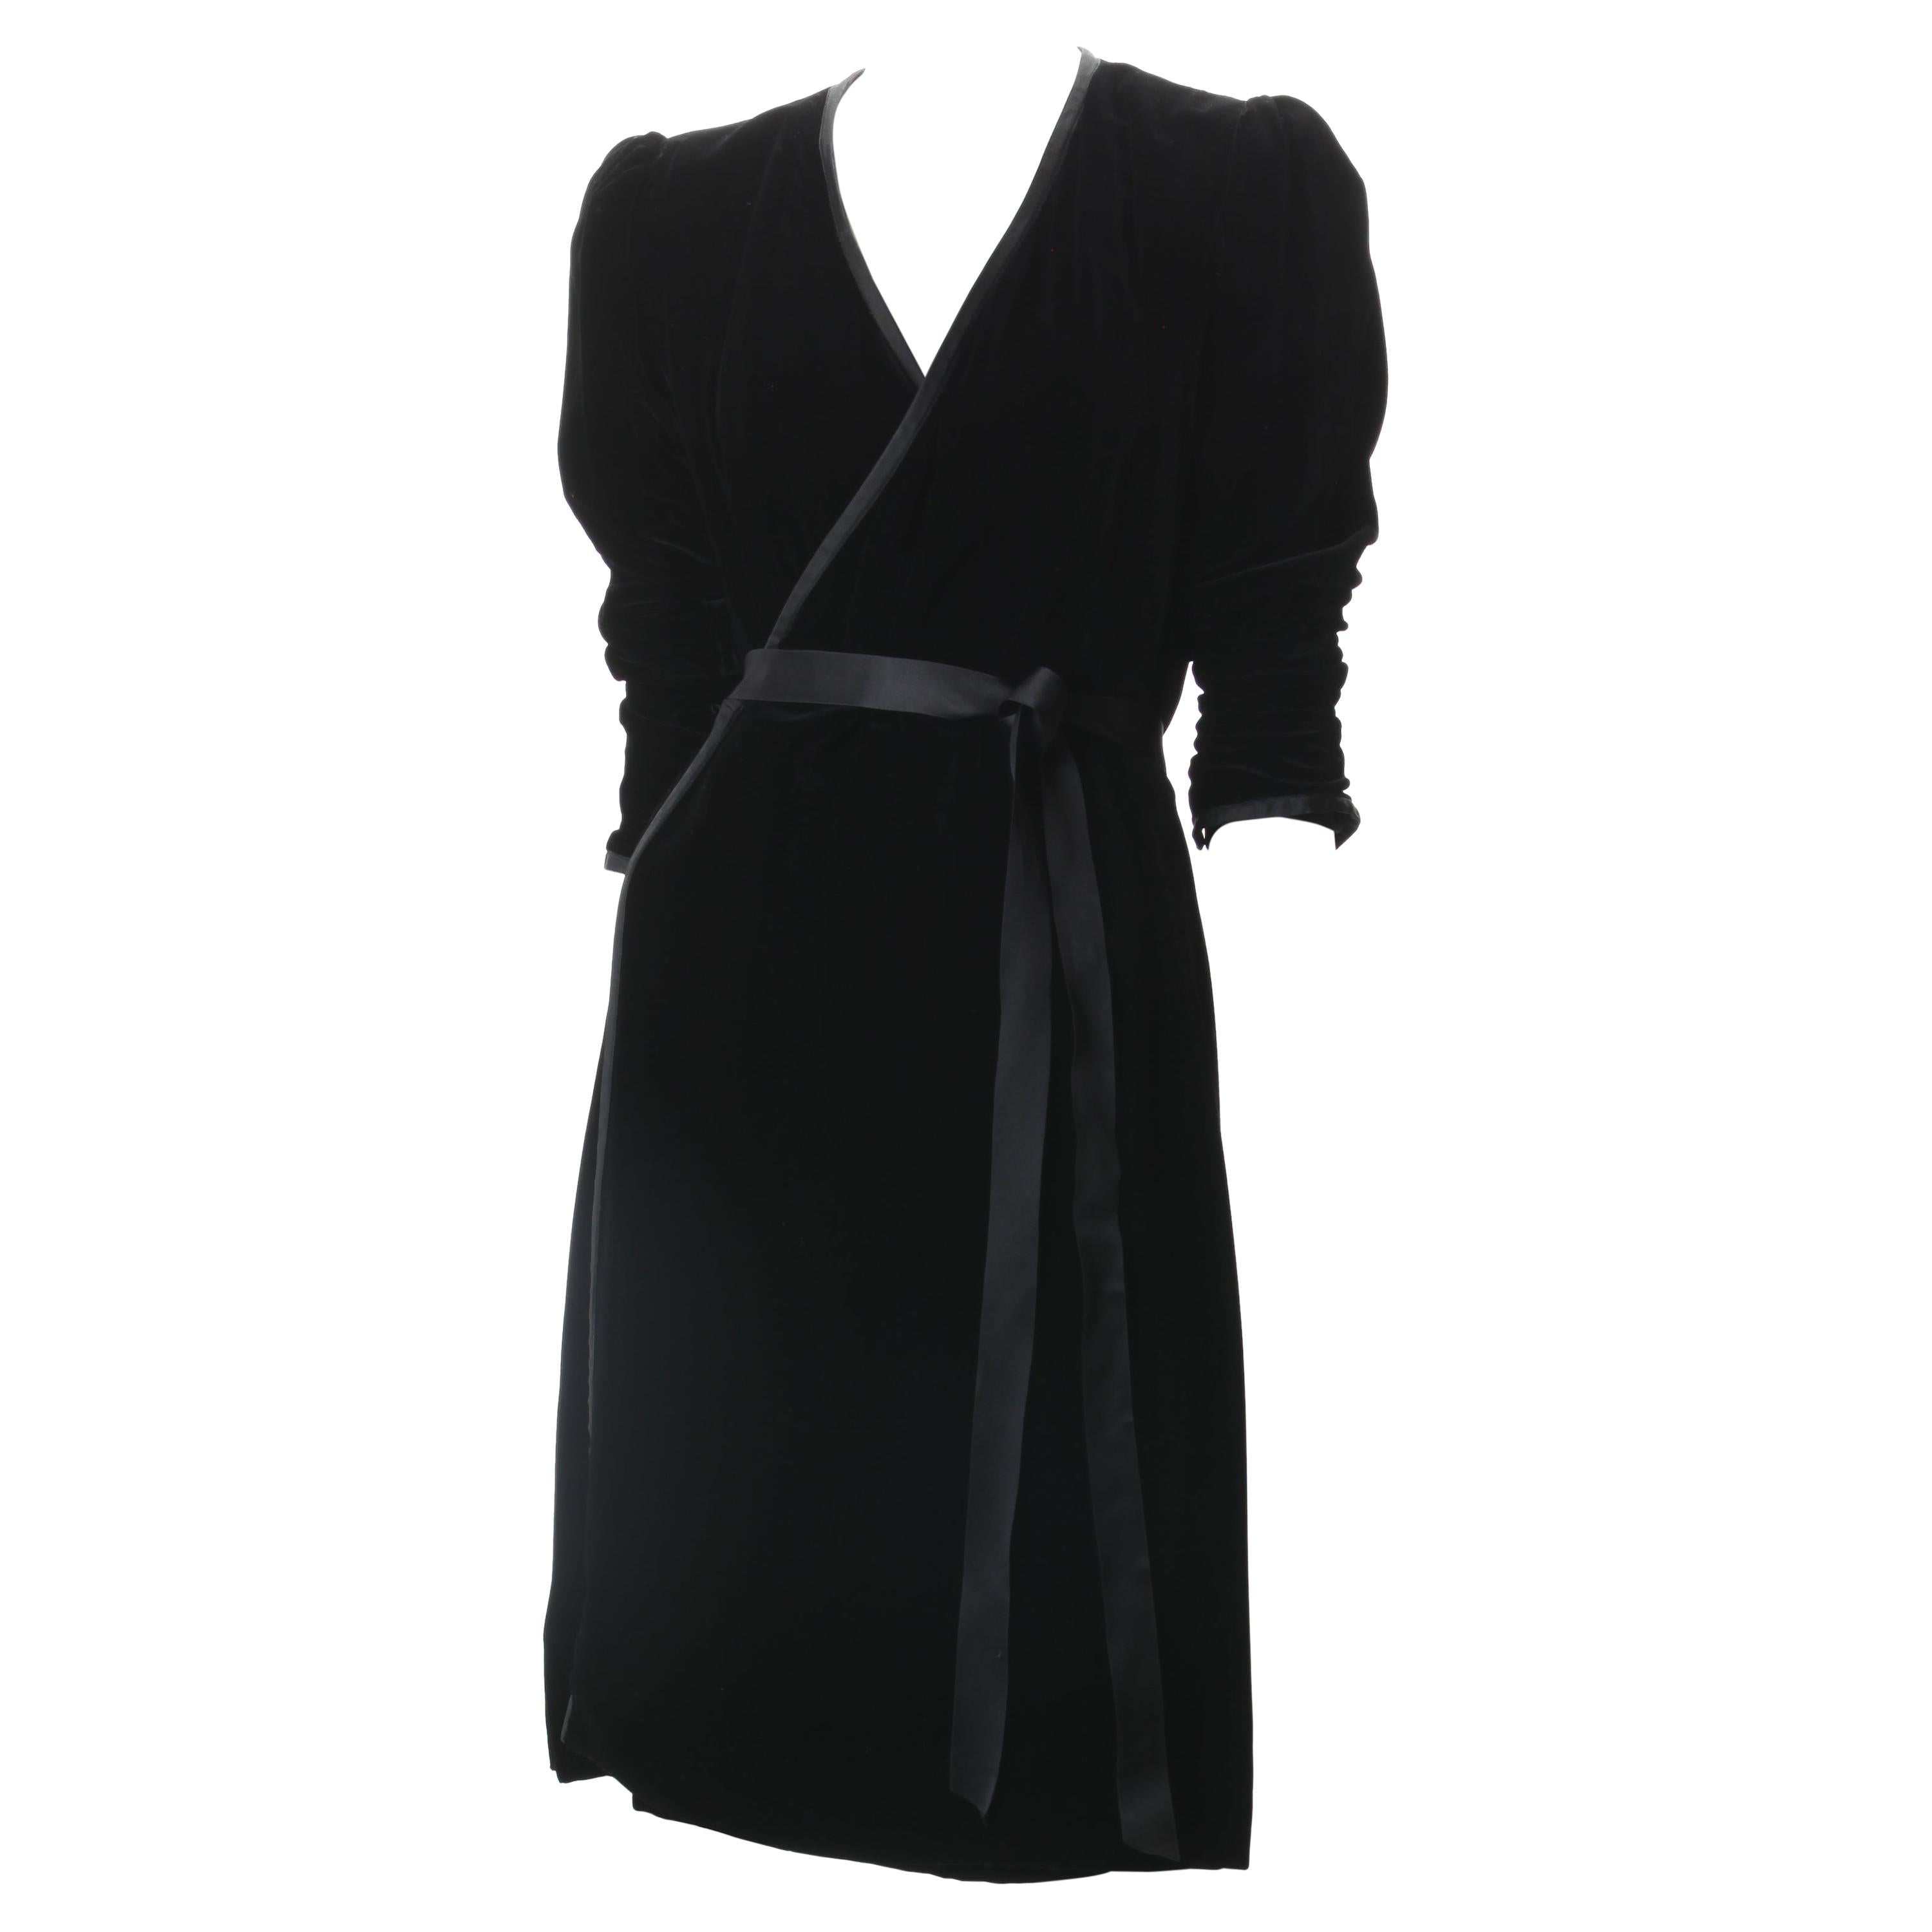 Yves Saint Laurent Rive Gauche Black Velvet Wrap Dress. c.1980s.